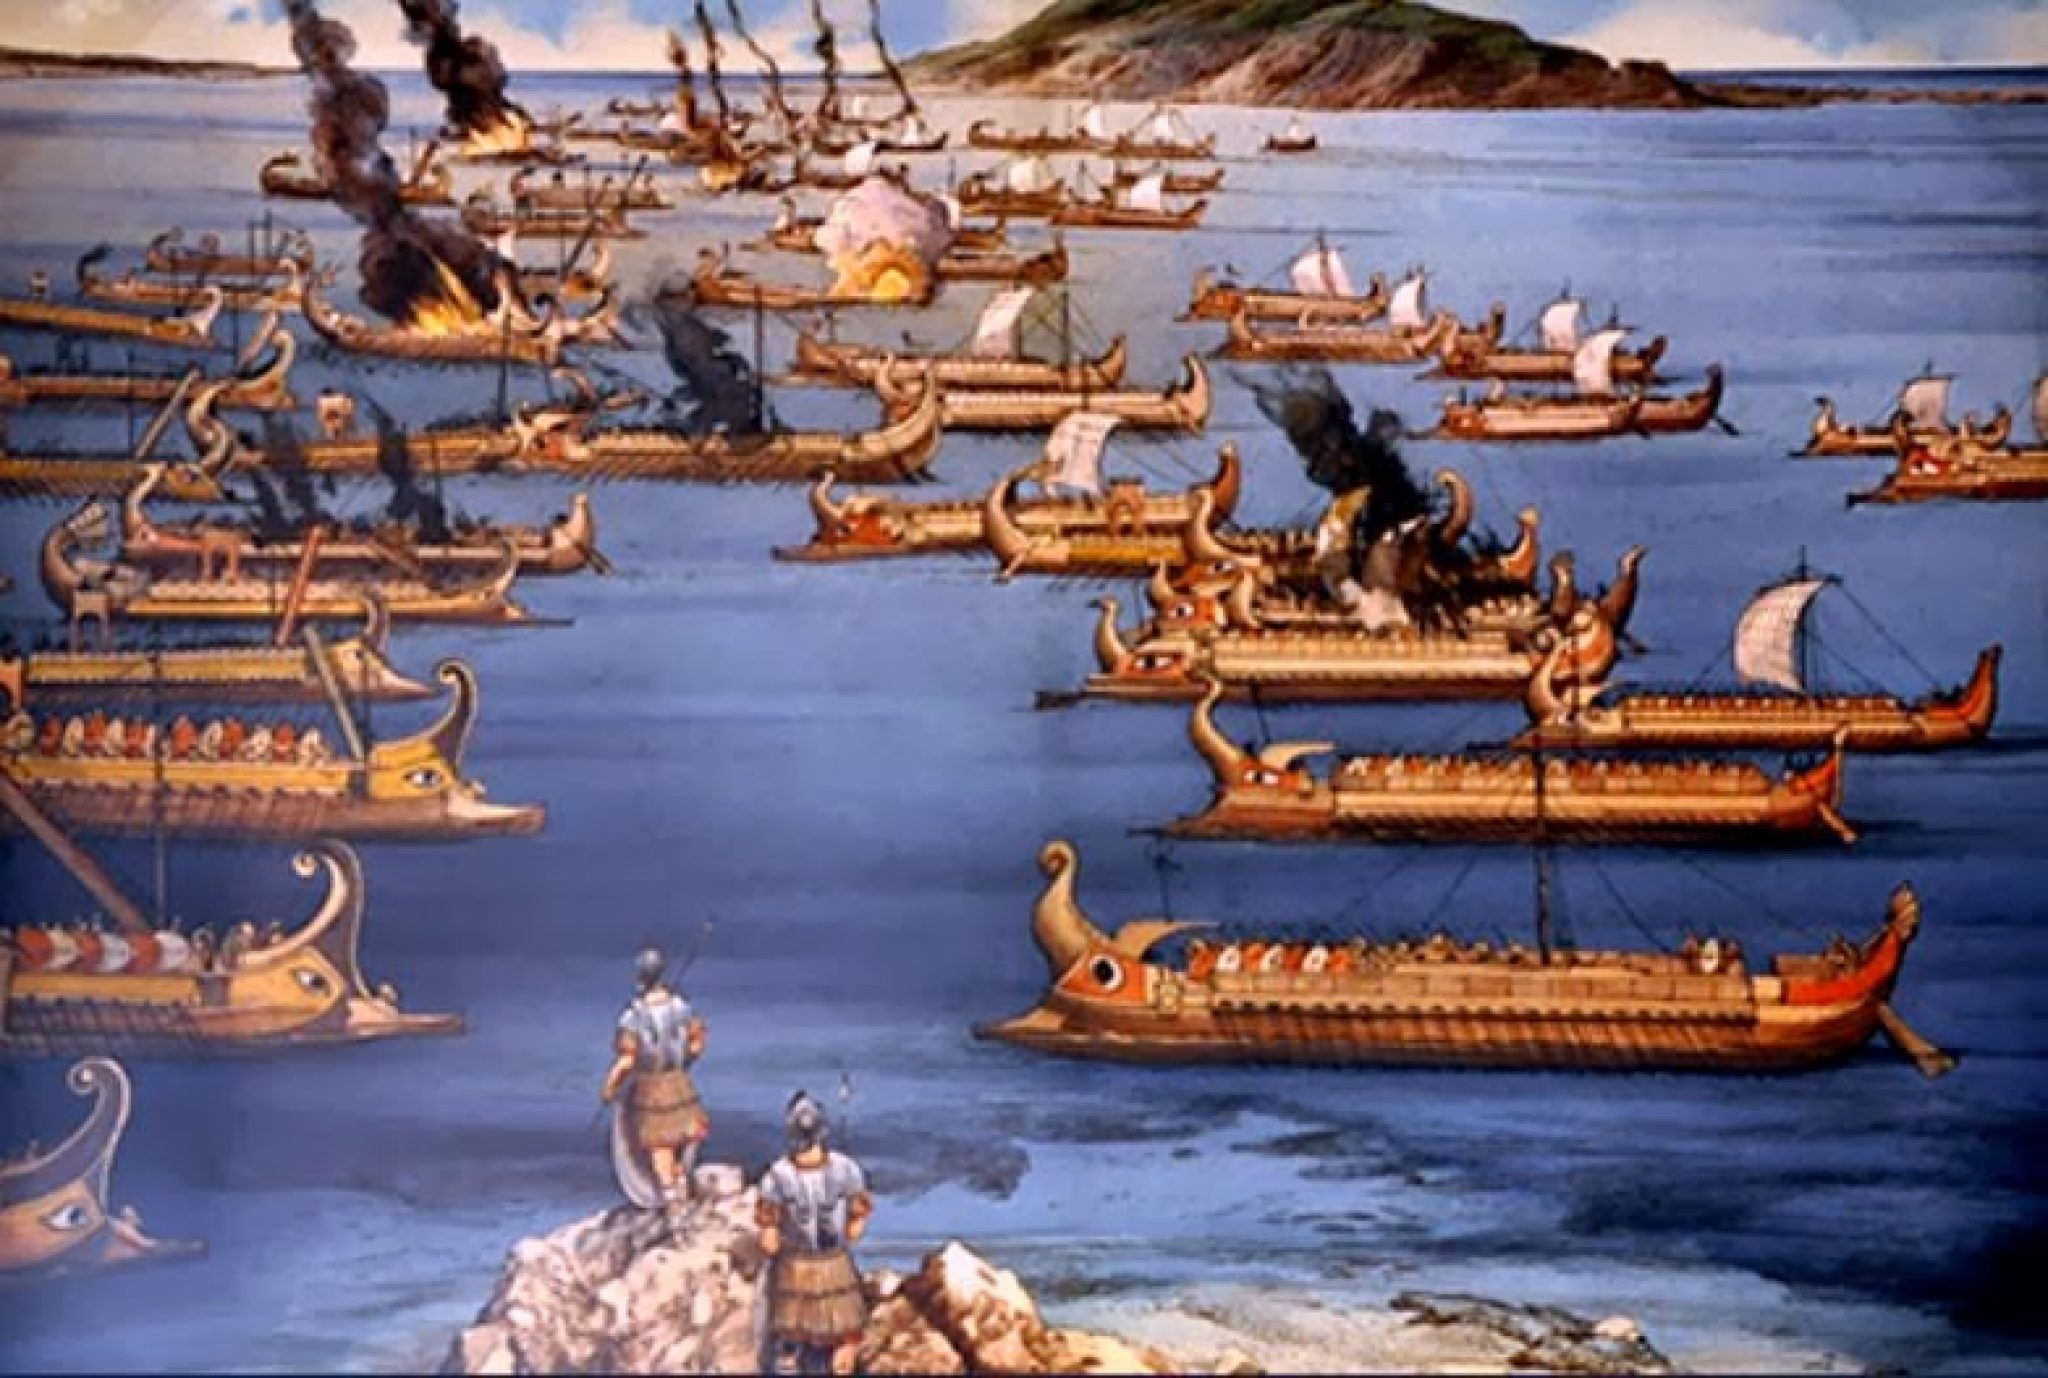 Презентация о первой морской победе римлян. Битва при Эгатских островах. Карфаген и Рим Морское сражение. Флот Карфагена. Карфаген Римский флот.